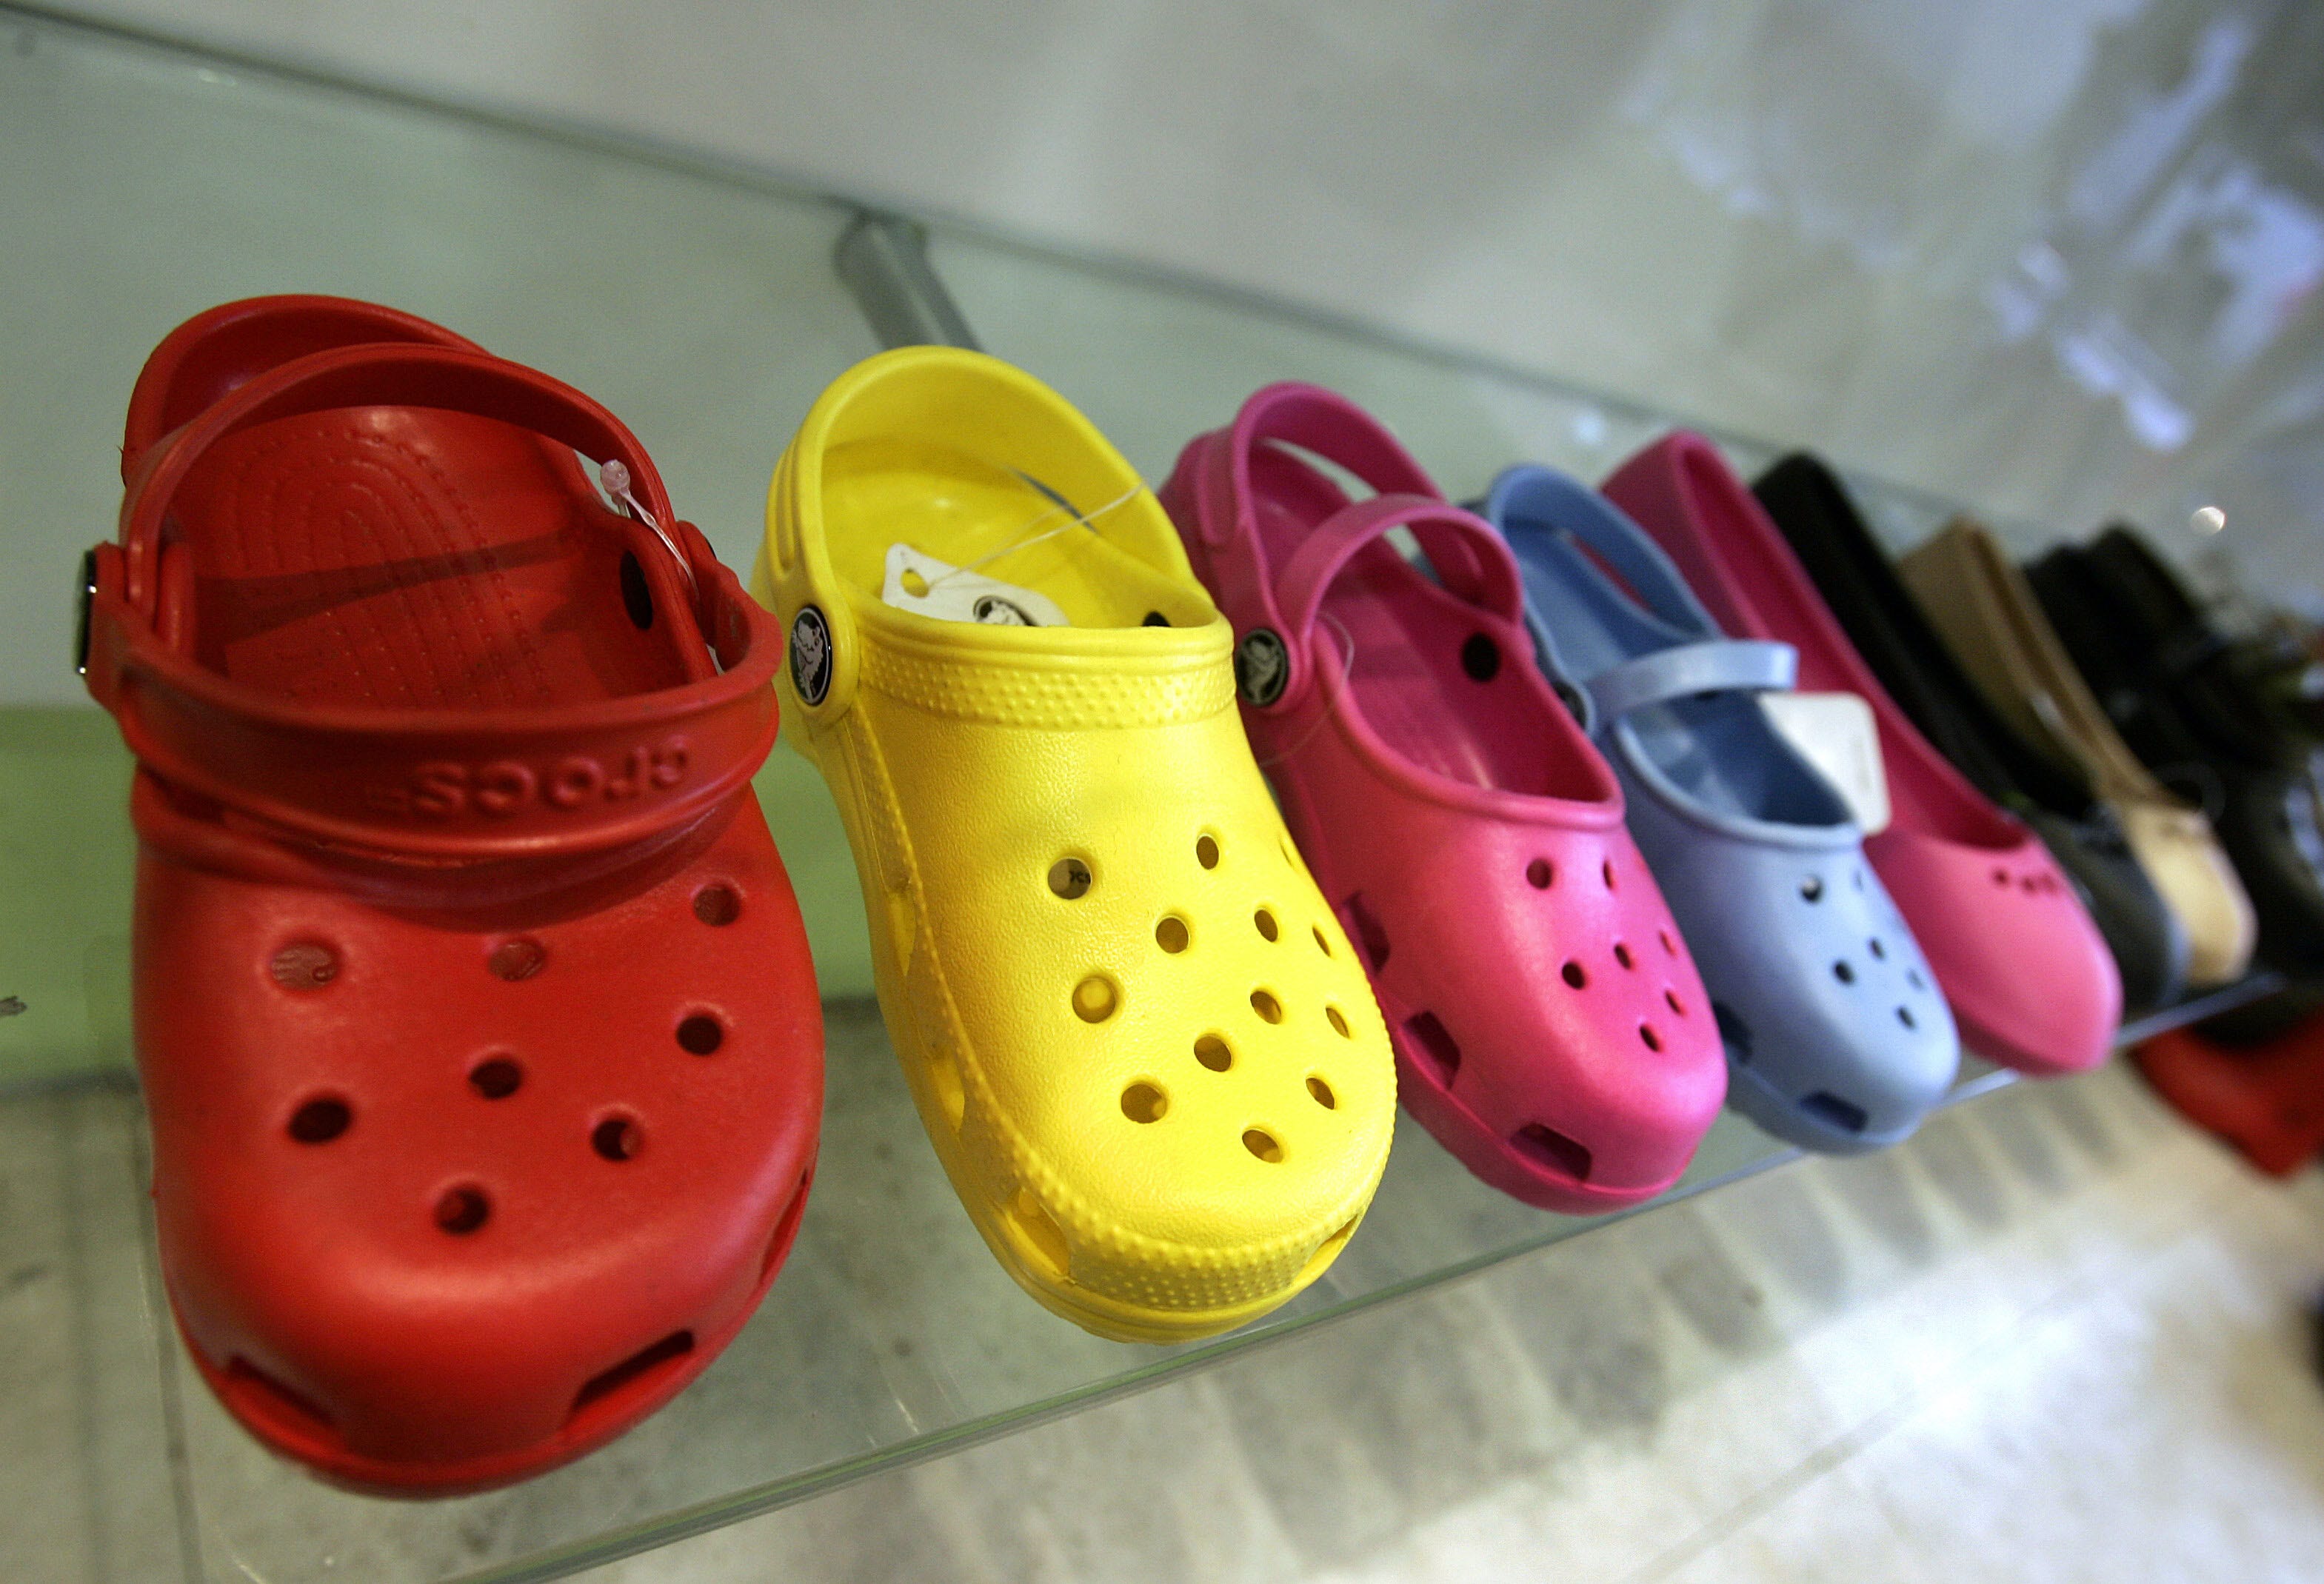 crocs bad for children's feet